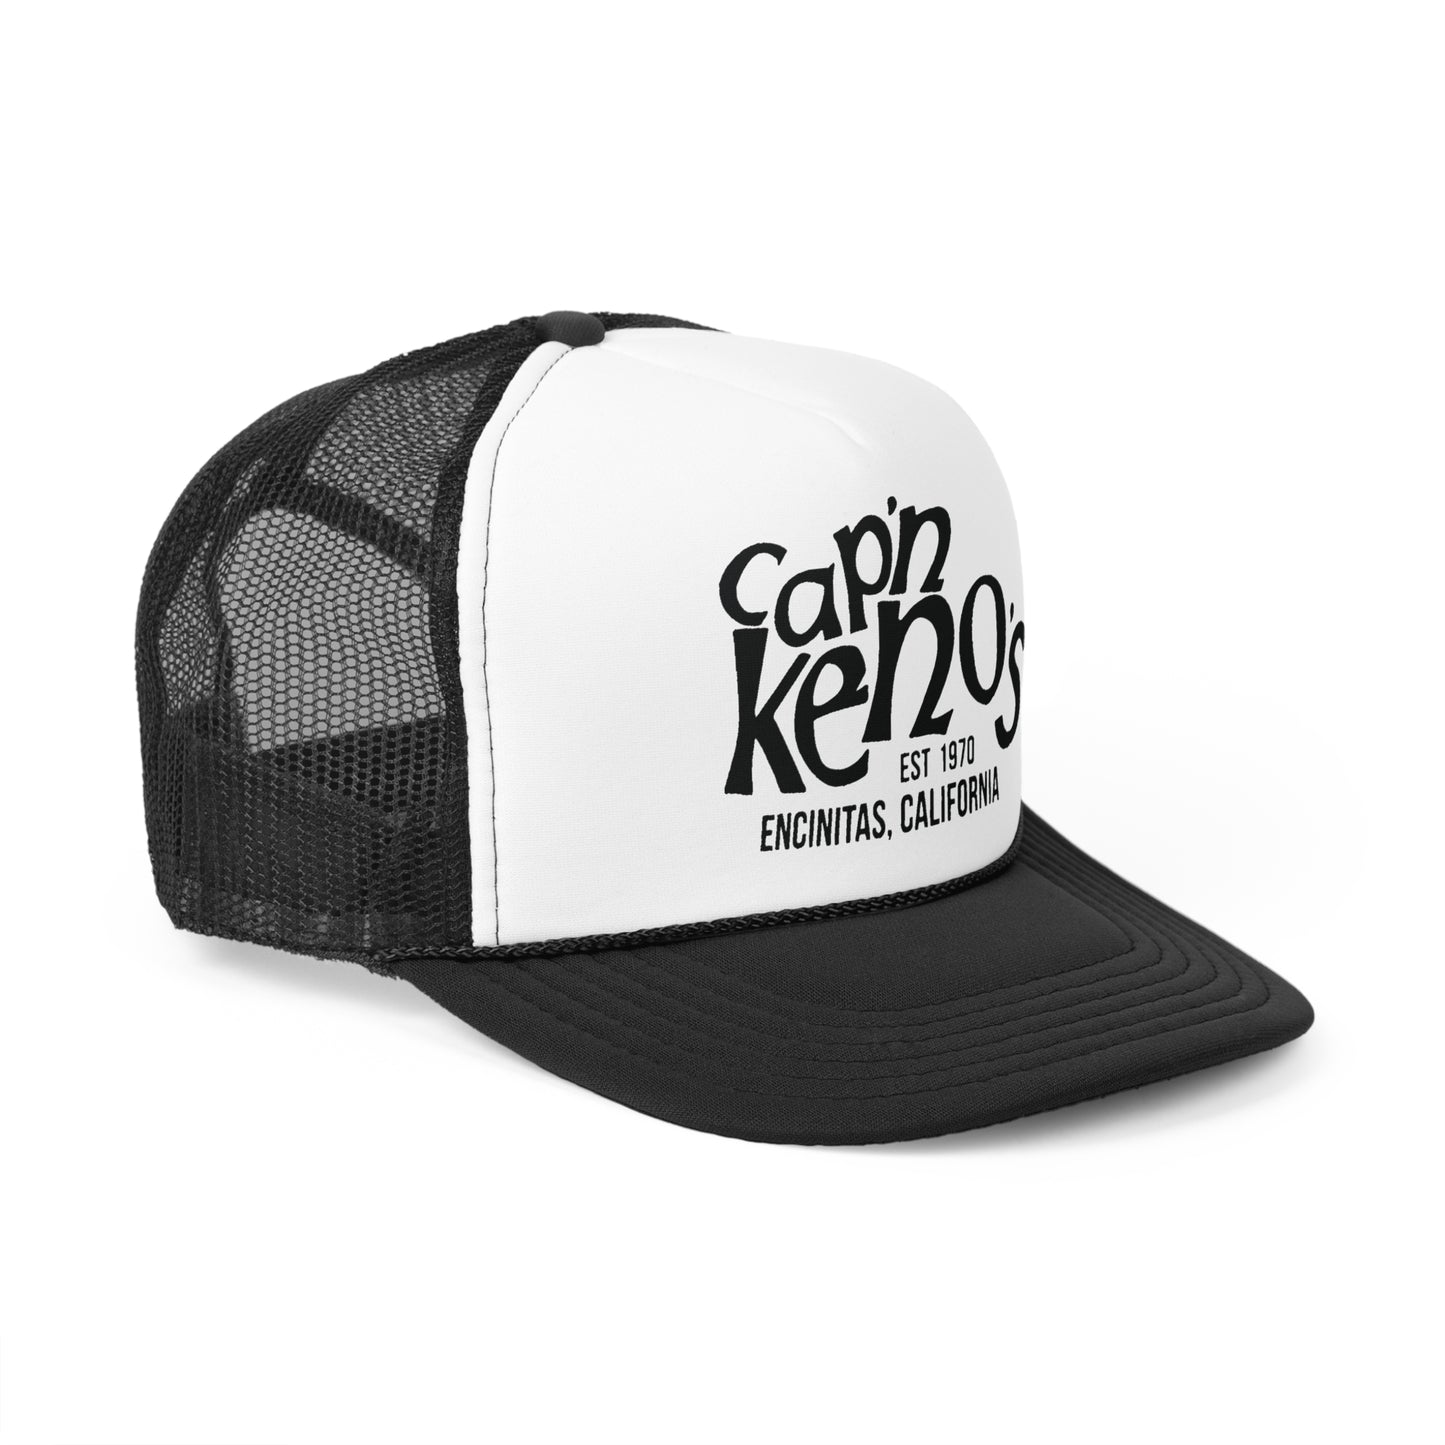 Cap'n Kenos Trucker Hats